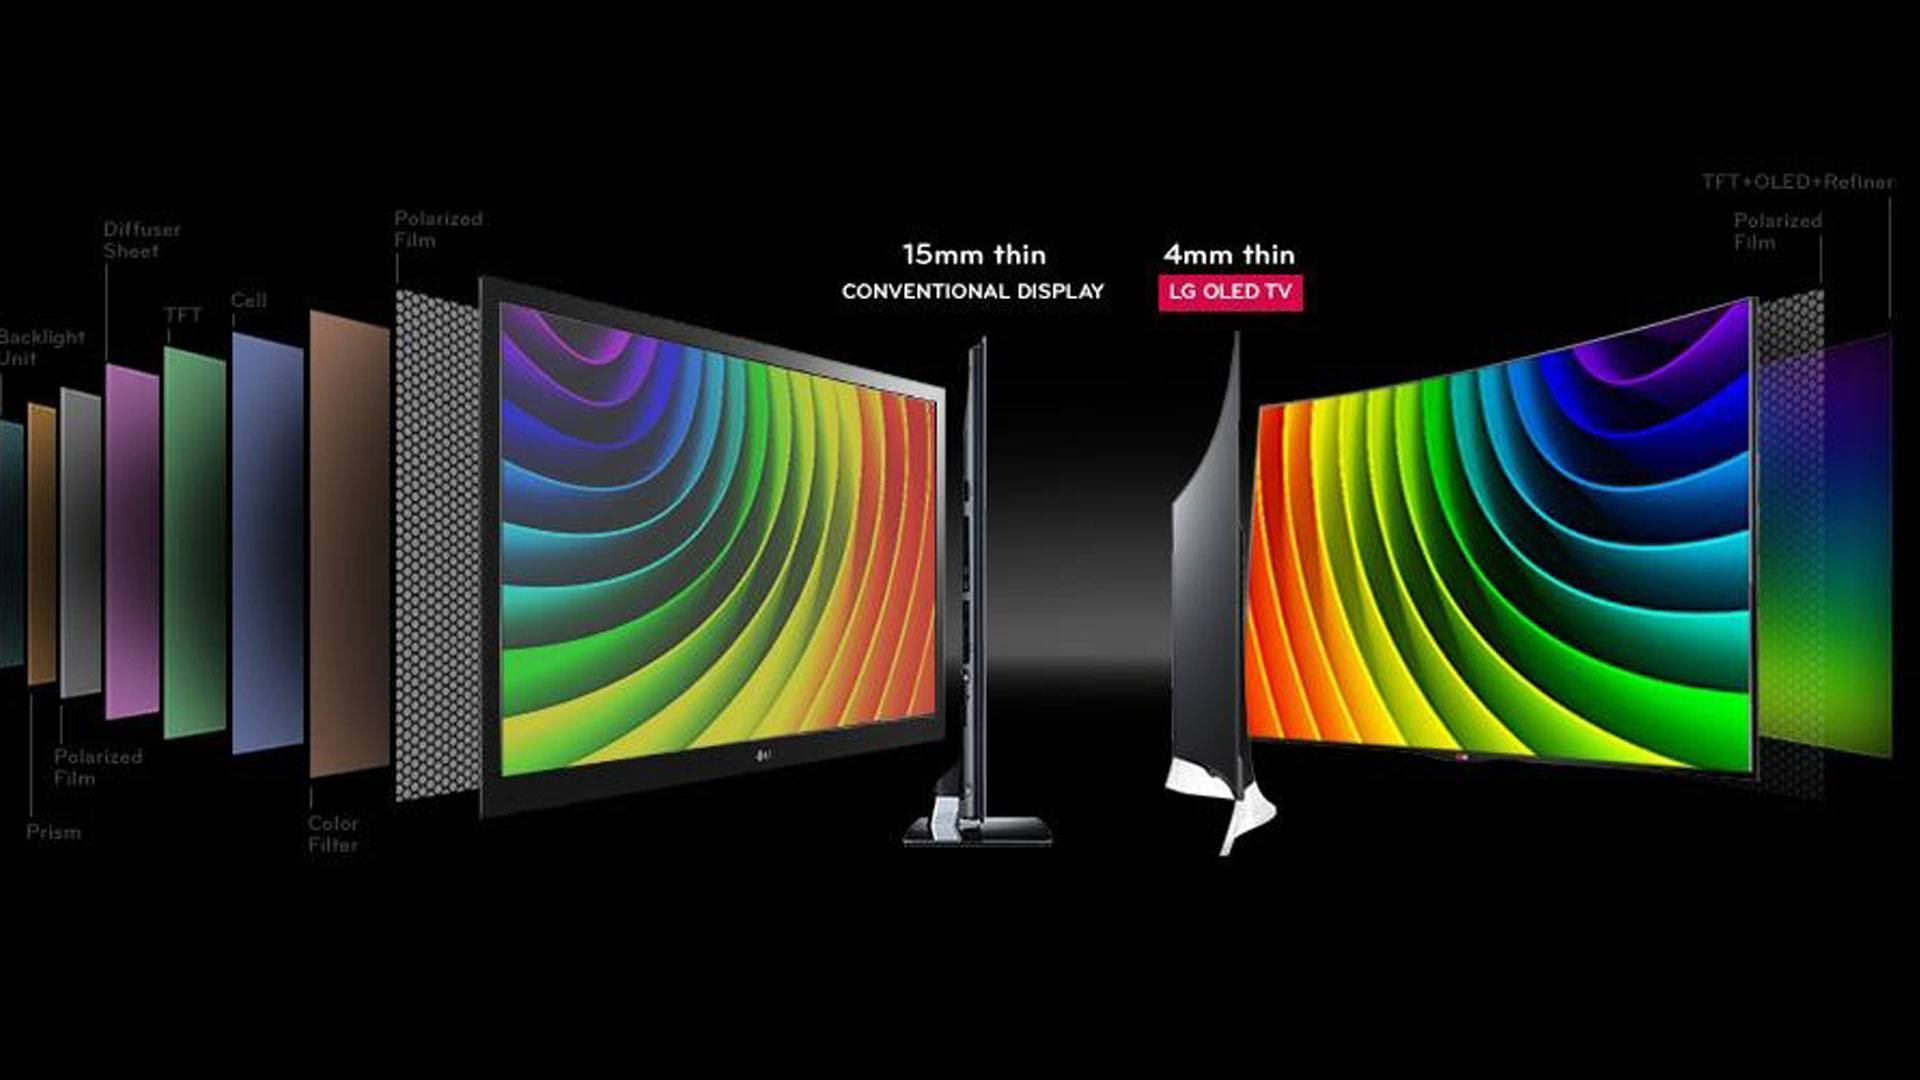 Лучшая матрица экрана. IPS LCD OLED QLED. IPS LCD vs OLED. OLED матрица телевизора. Экран OLED vs LCD.